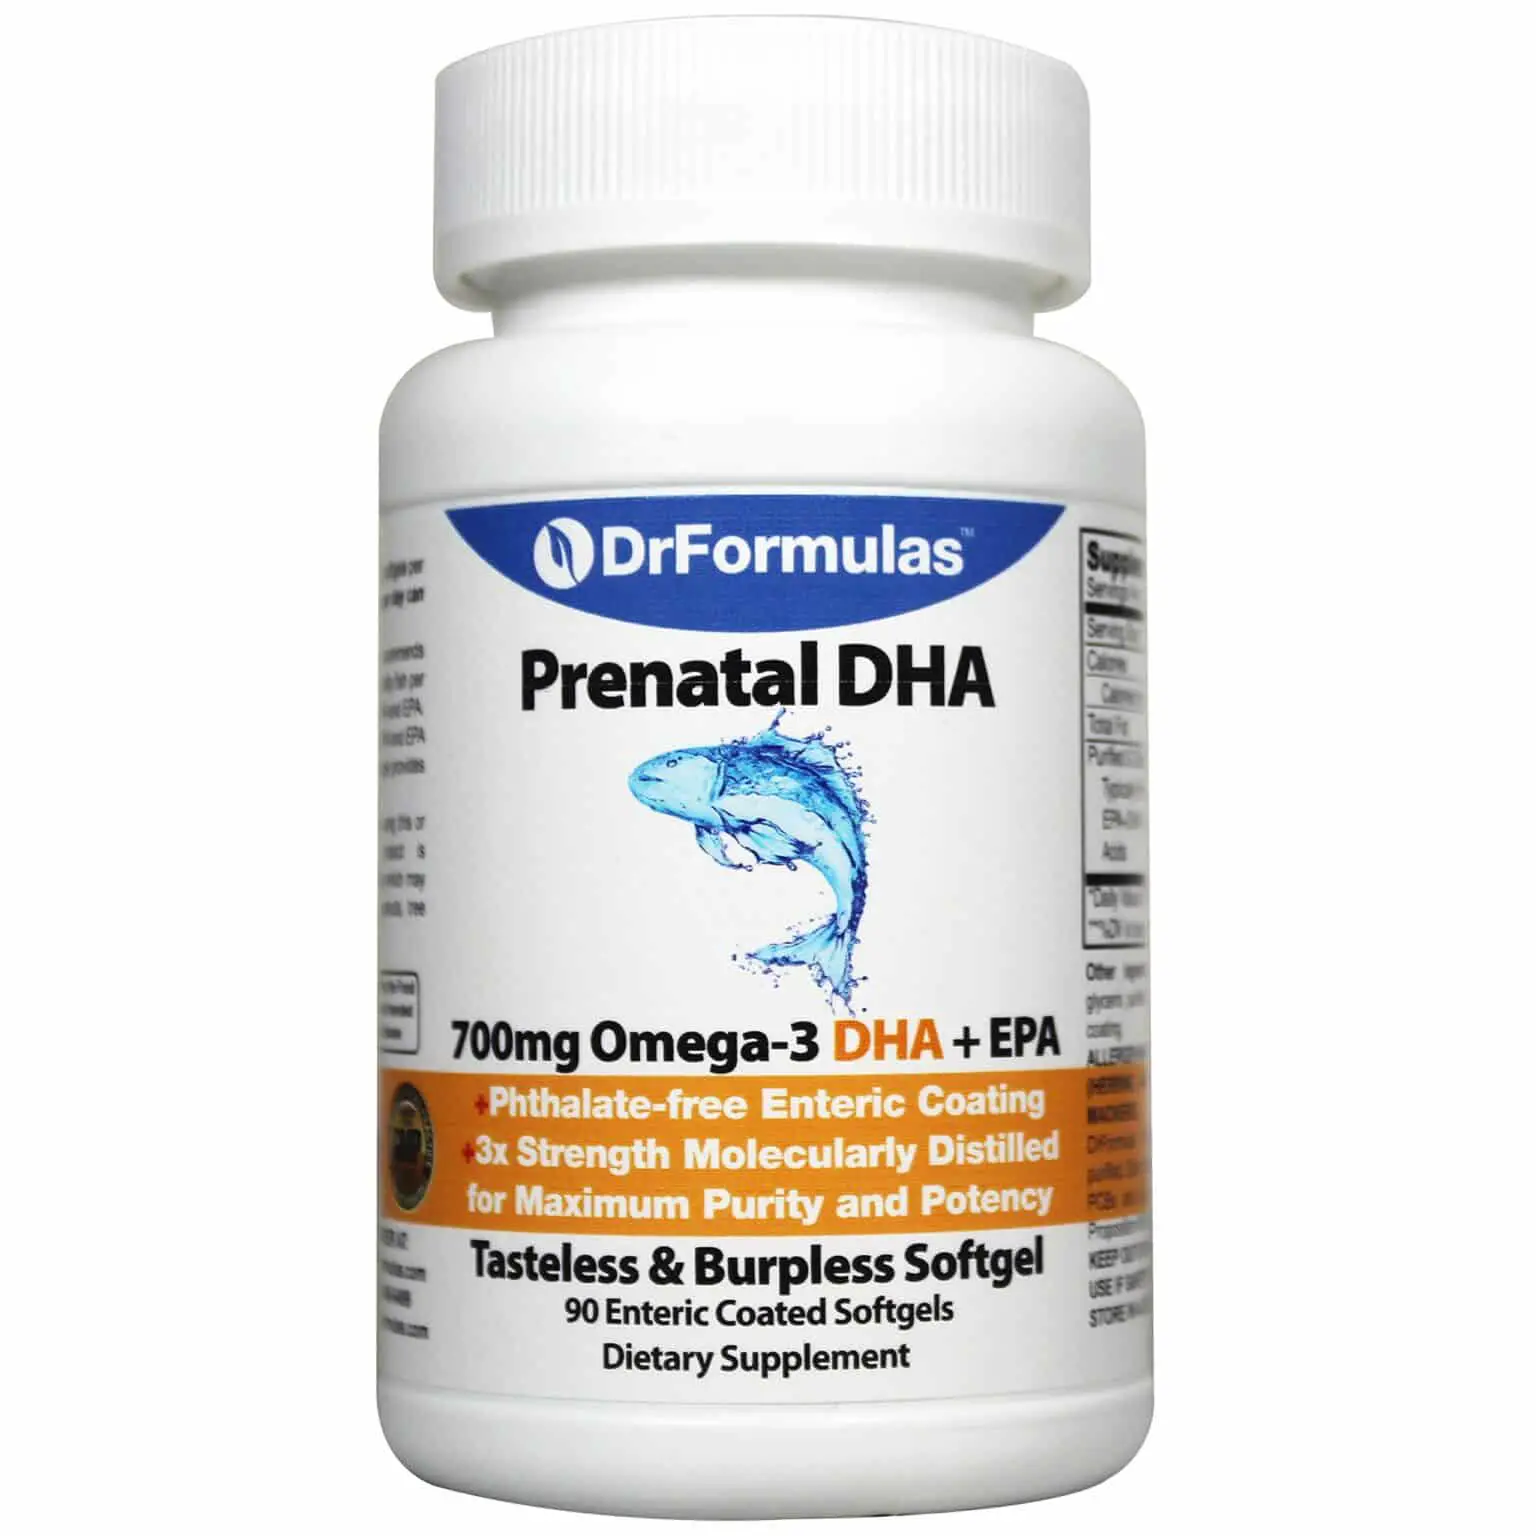 DrFormulas Best 700mg Prenatal DHA + EPA, S. American (not Nordic) Fish ...